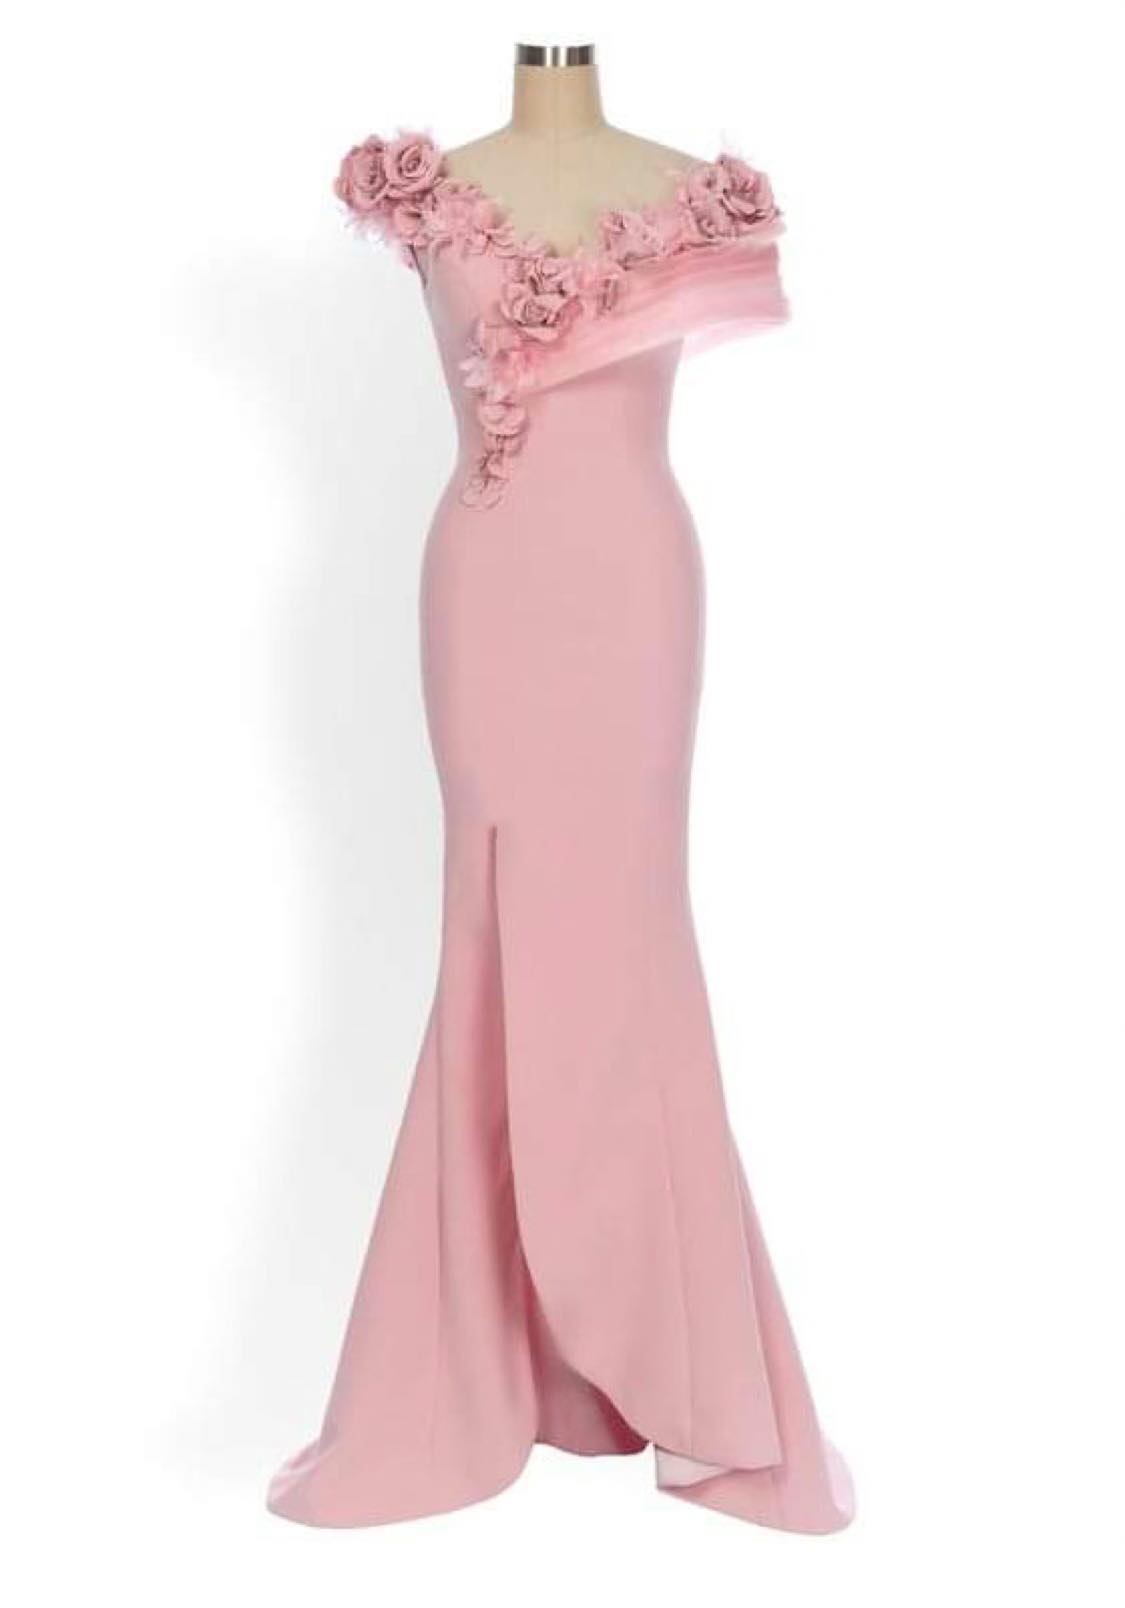 Mulan Gown in Pink - Shop women style vintage, Audrey Hepburn jackets online -Christine